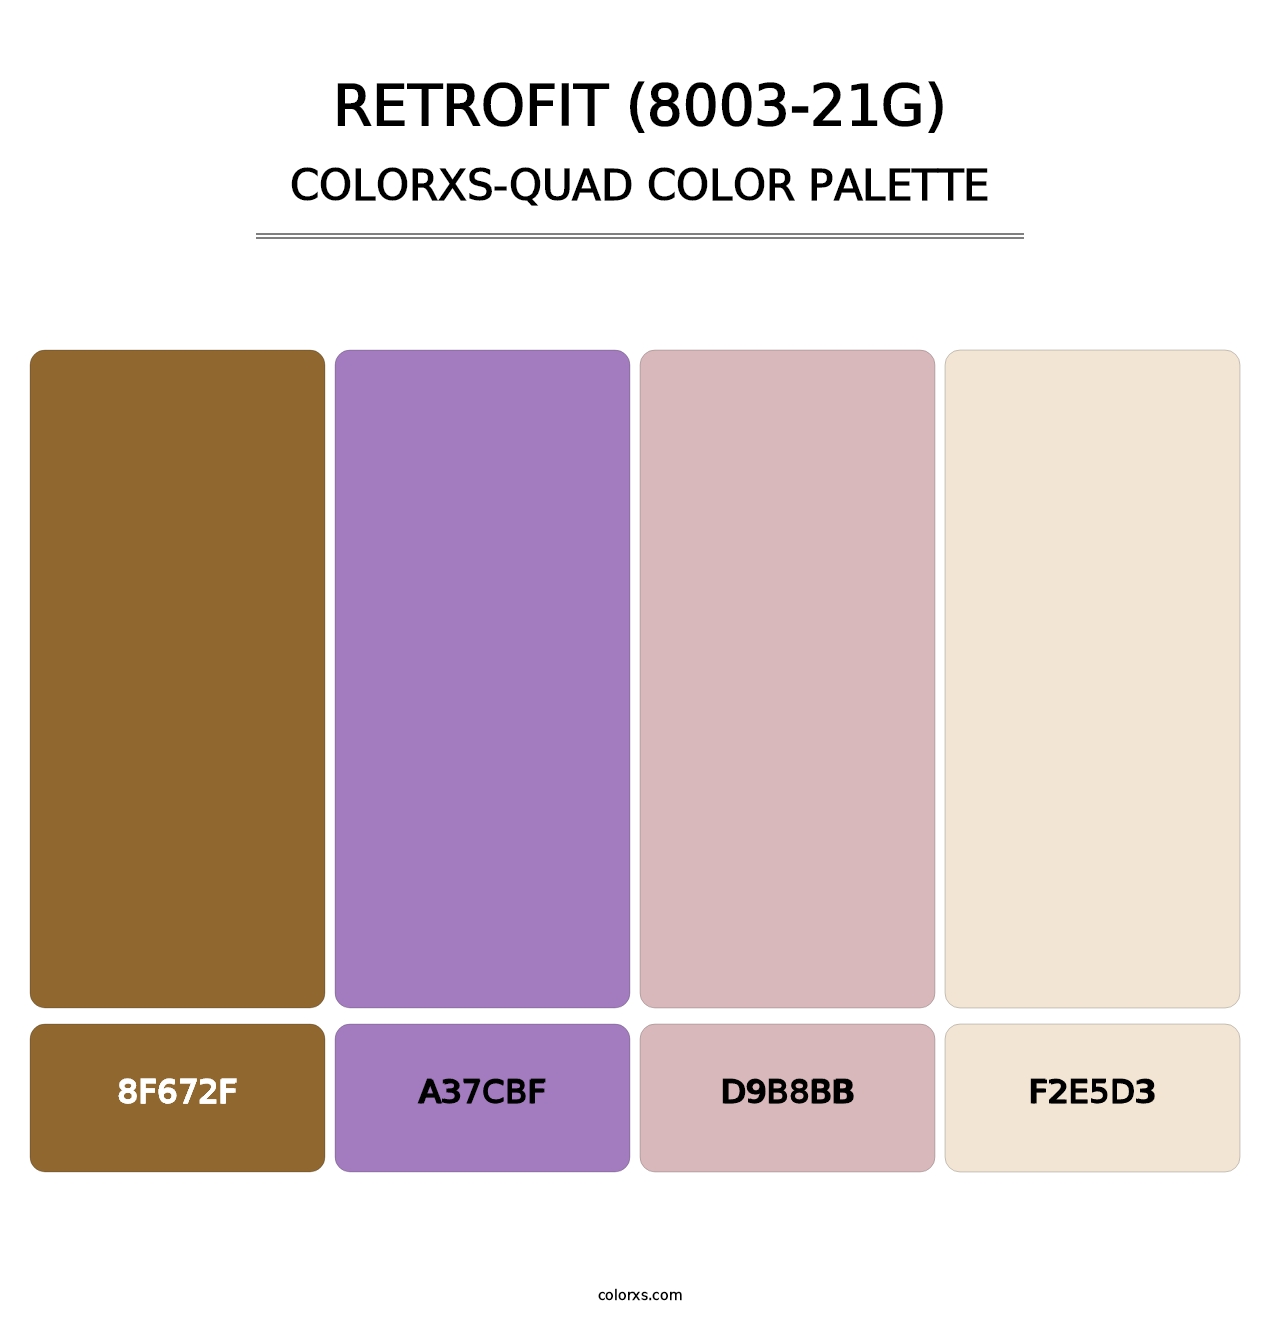 Retrofit (8003-21G) - Colorxs Quad Palette